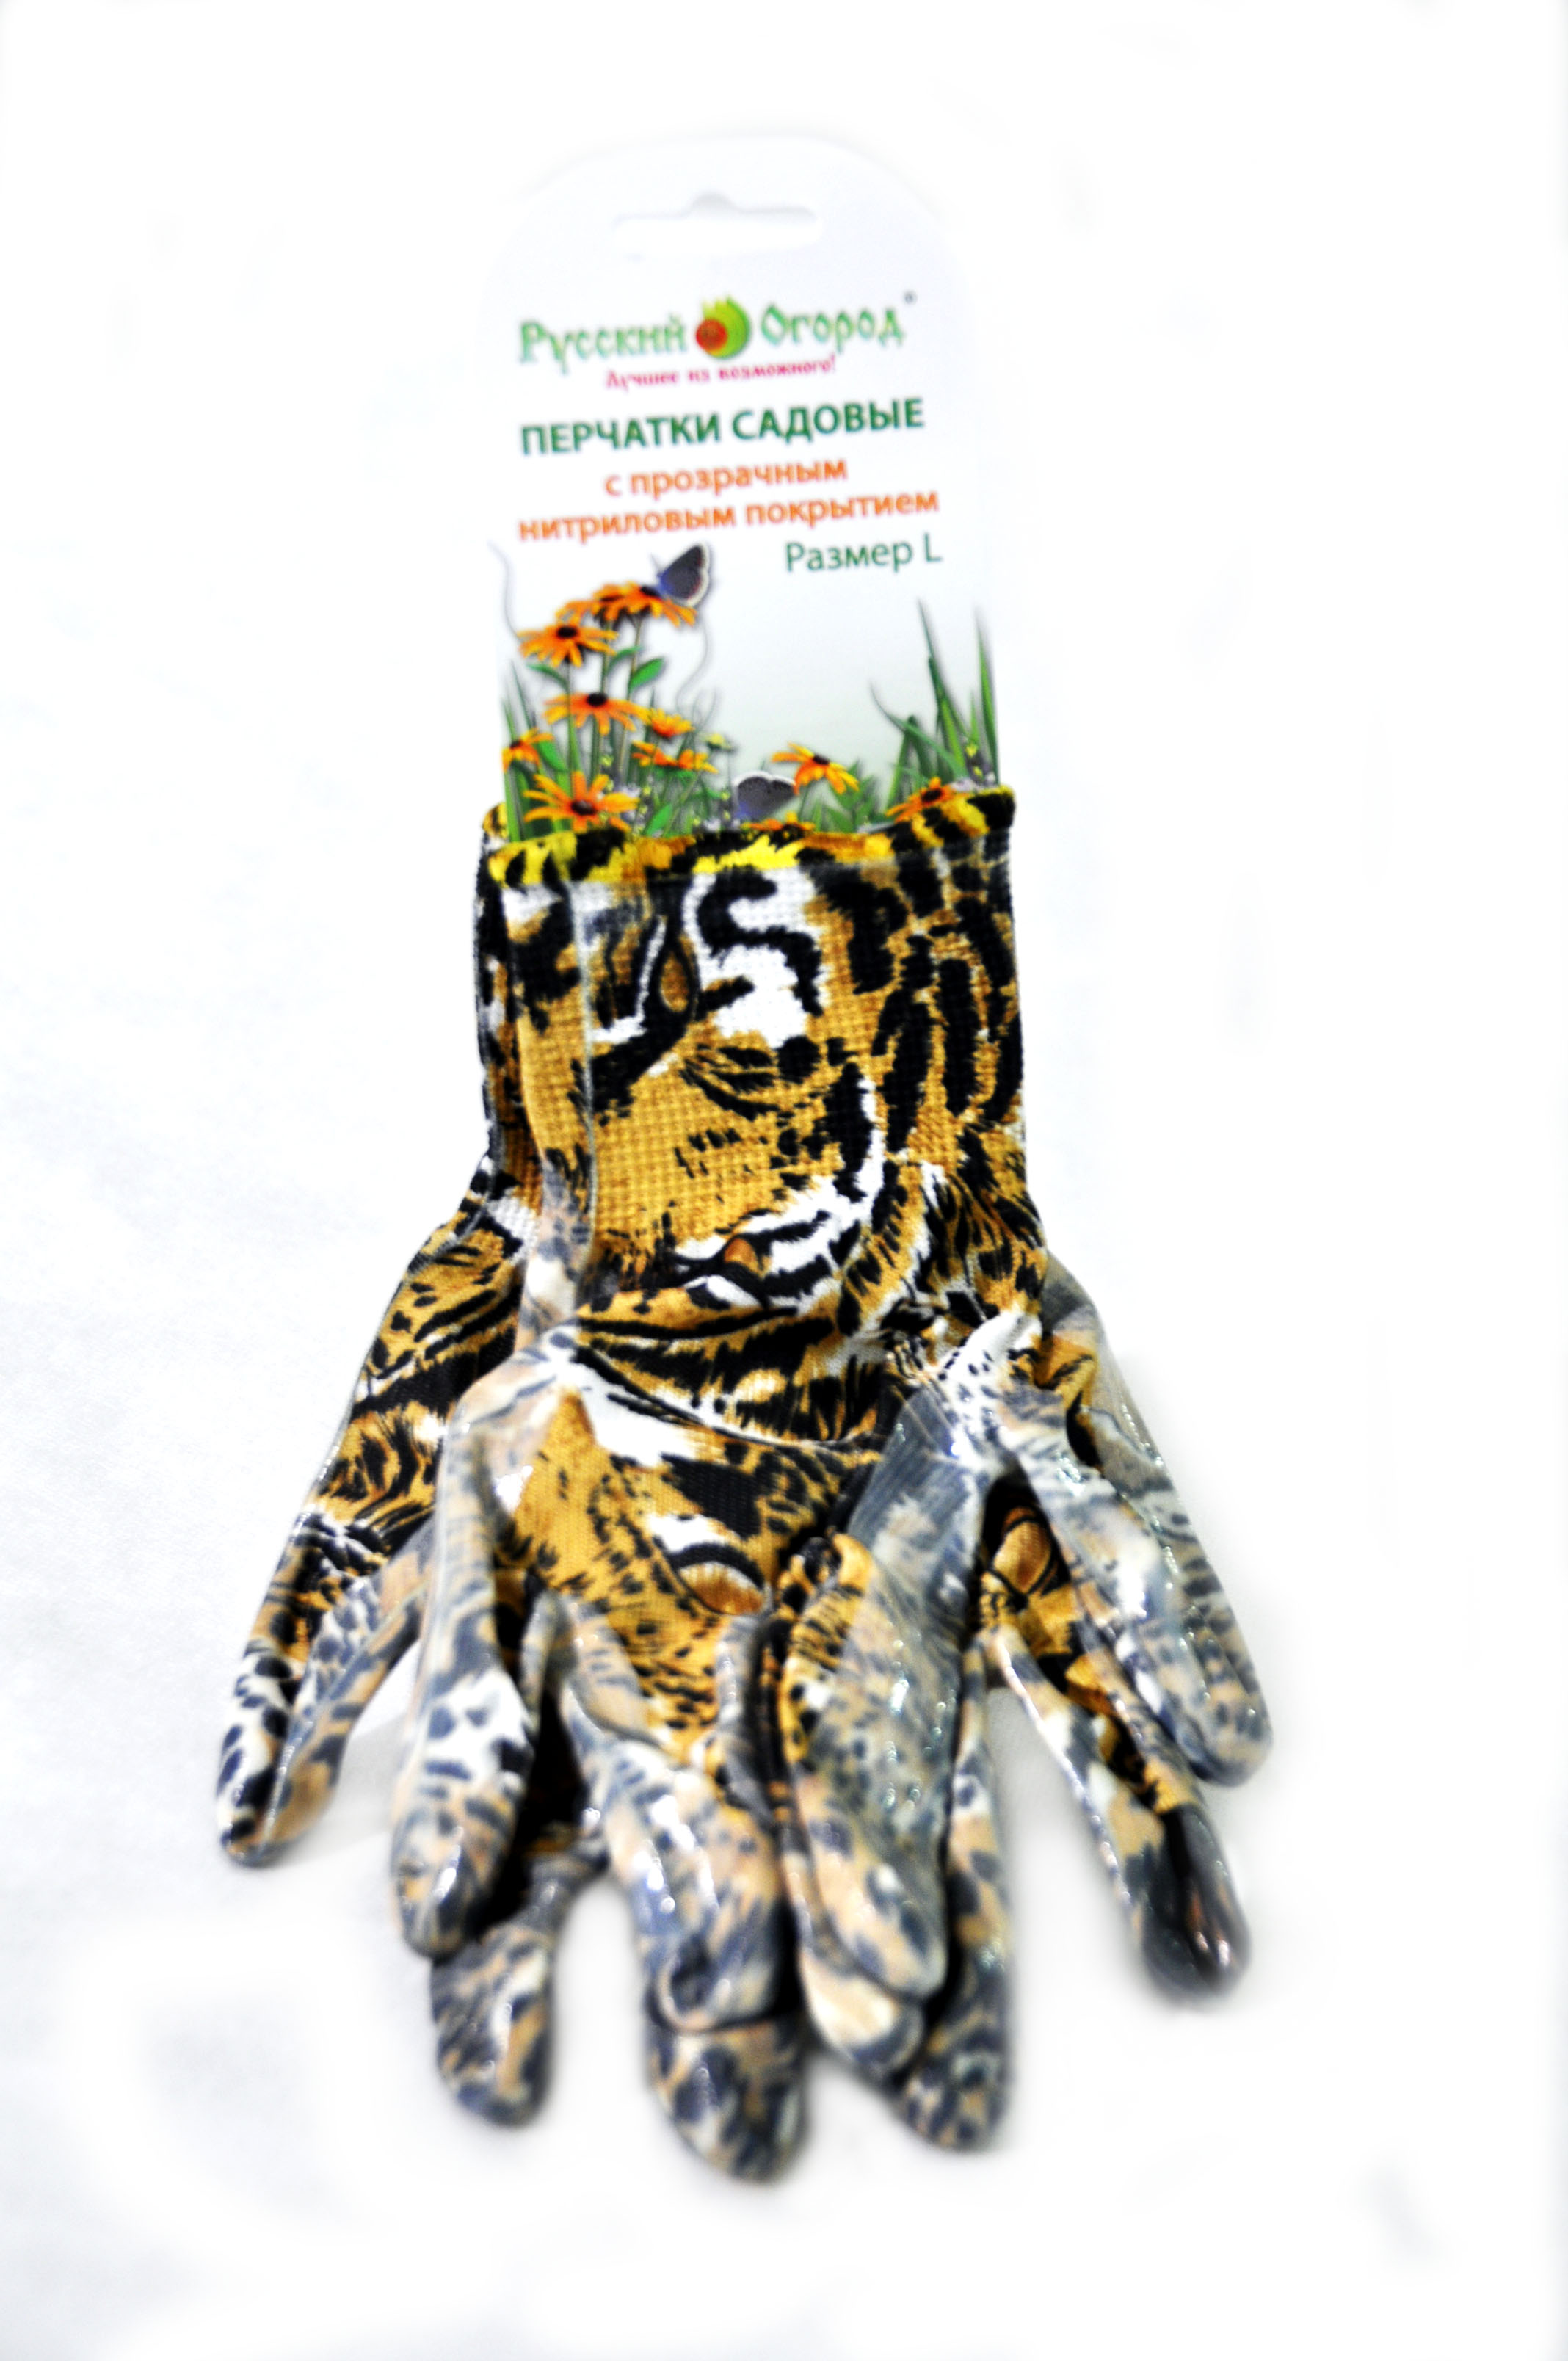 Перчатки Русский Огород нейлоновые с нитриловым покрытием леопардовые, размер L - купить с доставкой